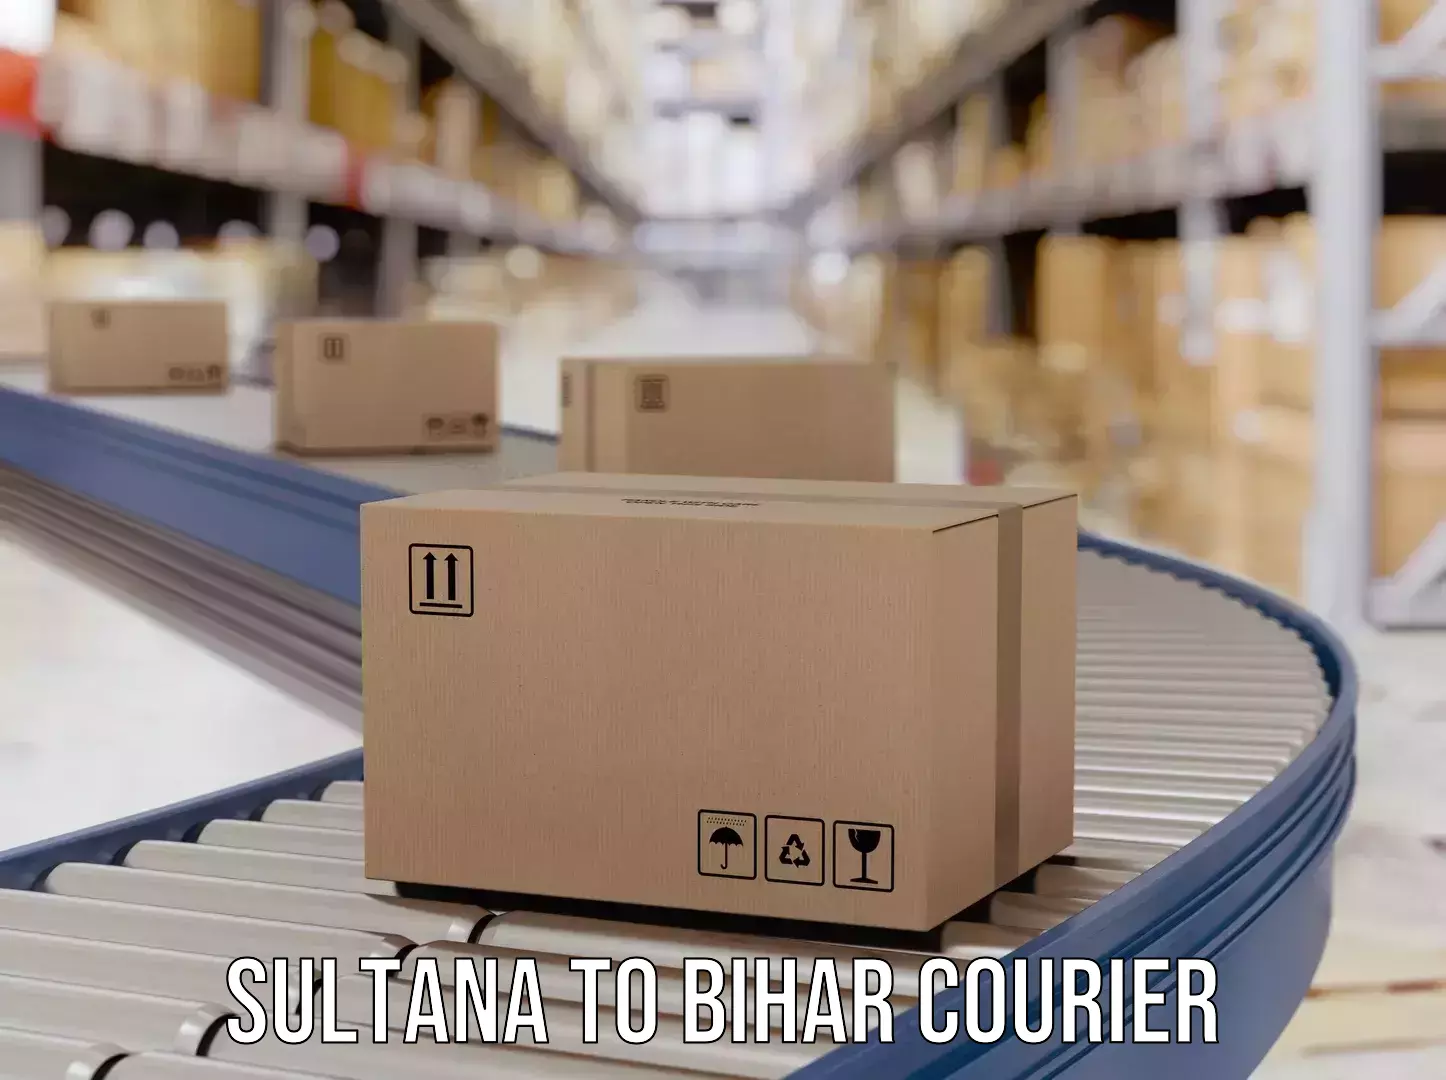 Courier service comparison Sultana to Runni Saidpur